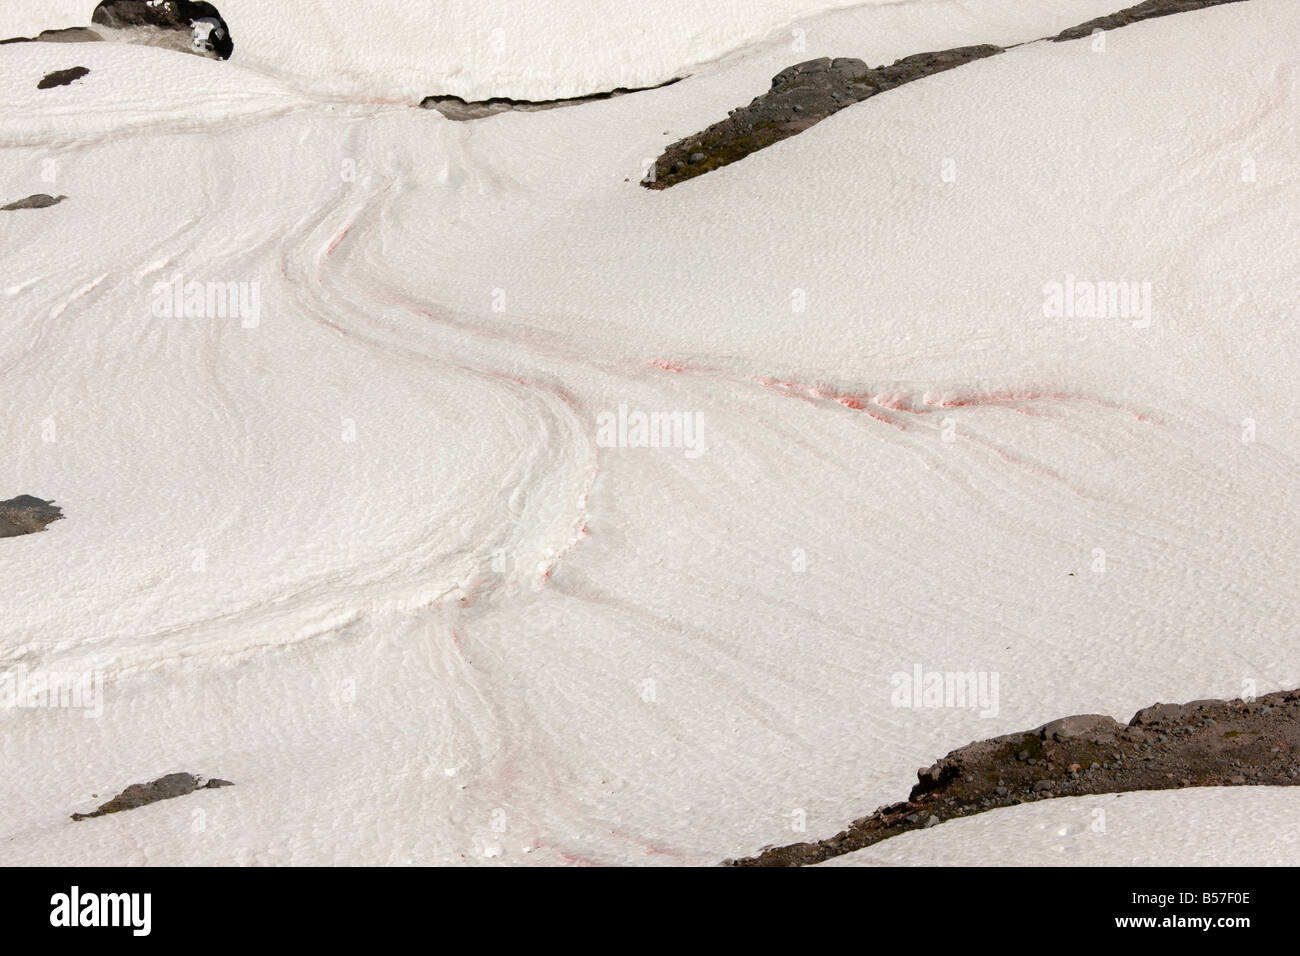 Red Snow oder Wassermelone Schnee verursacht durch einzellige Algen Chlamydomonas Nivalis auf Mount Rainier Cascade Mountains Washington Stockfoto